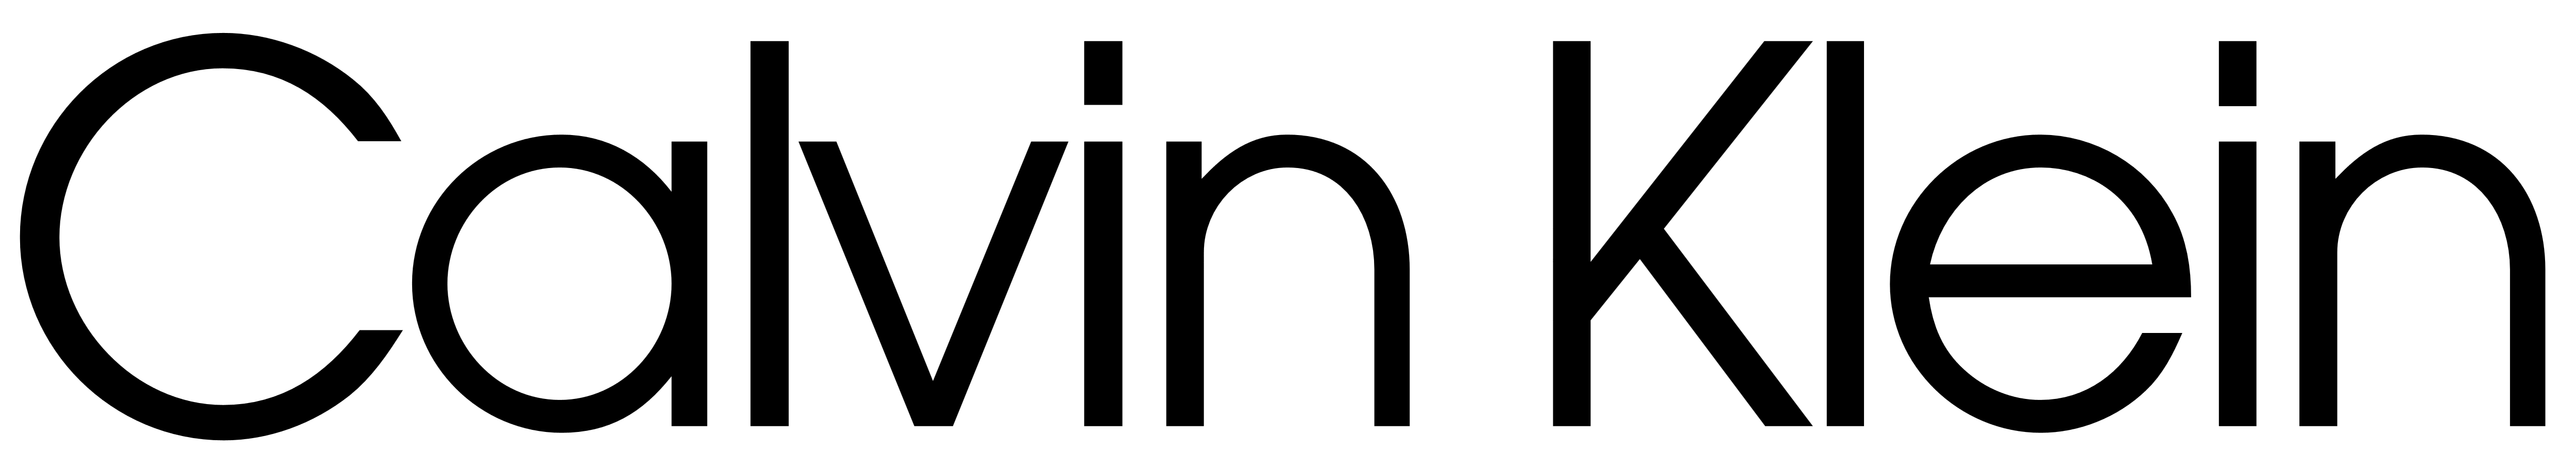 كالفين كلاين logo PNG صورة عالية الجودة